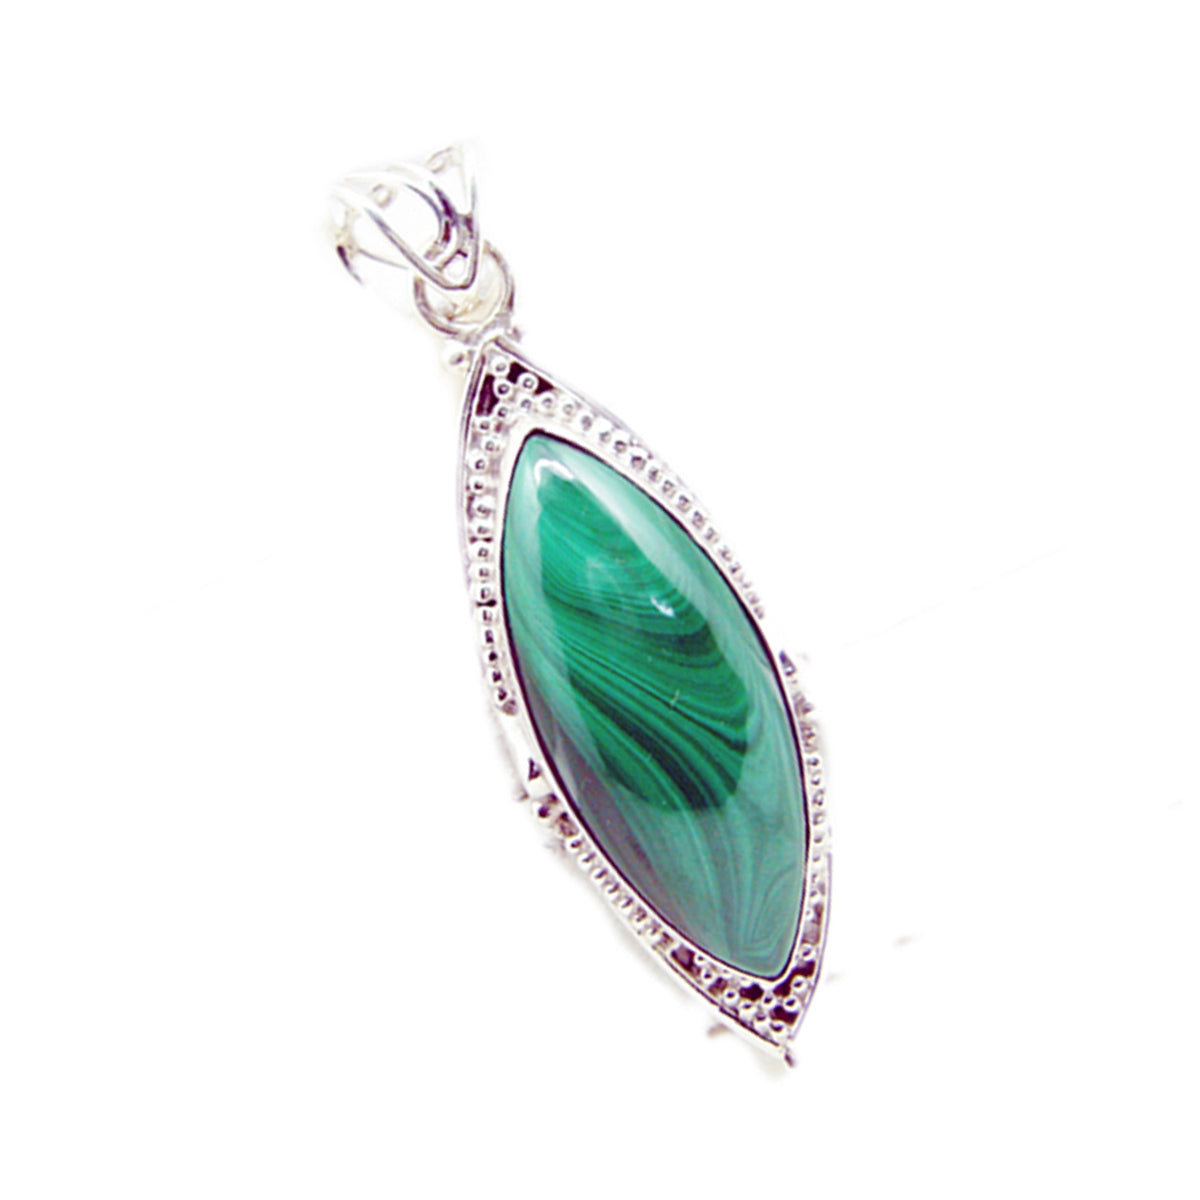 Riyo fanciable piedra preciosa marquesa cabujón malaquita verde colgante de plata de ley regalo para hecho a mano